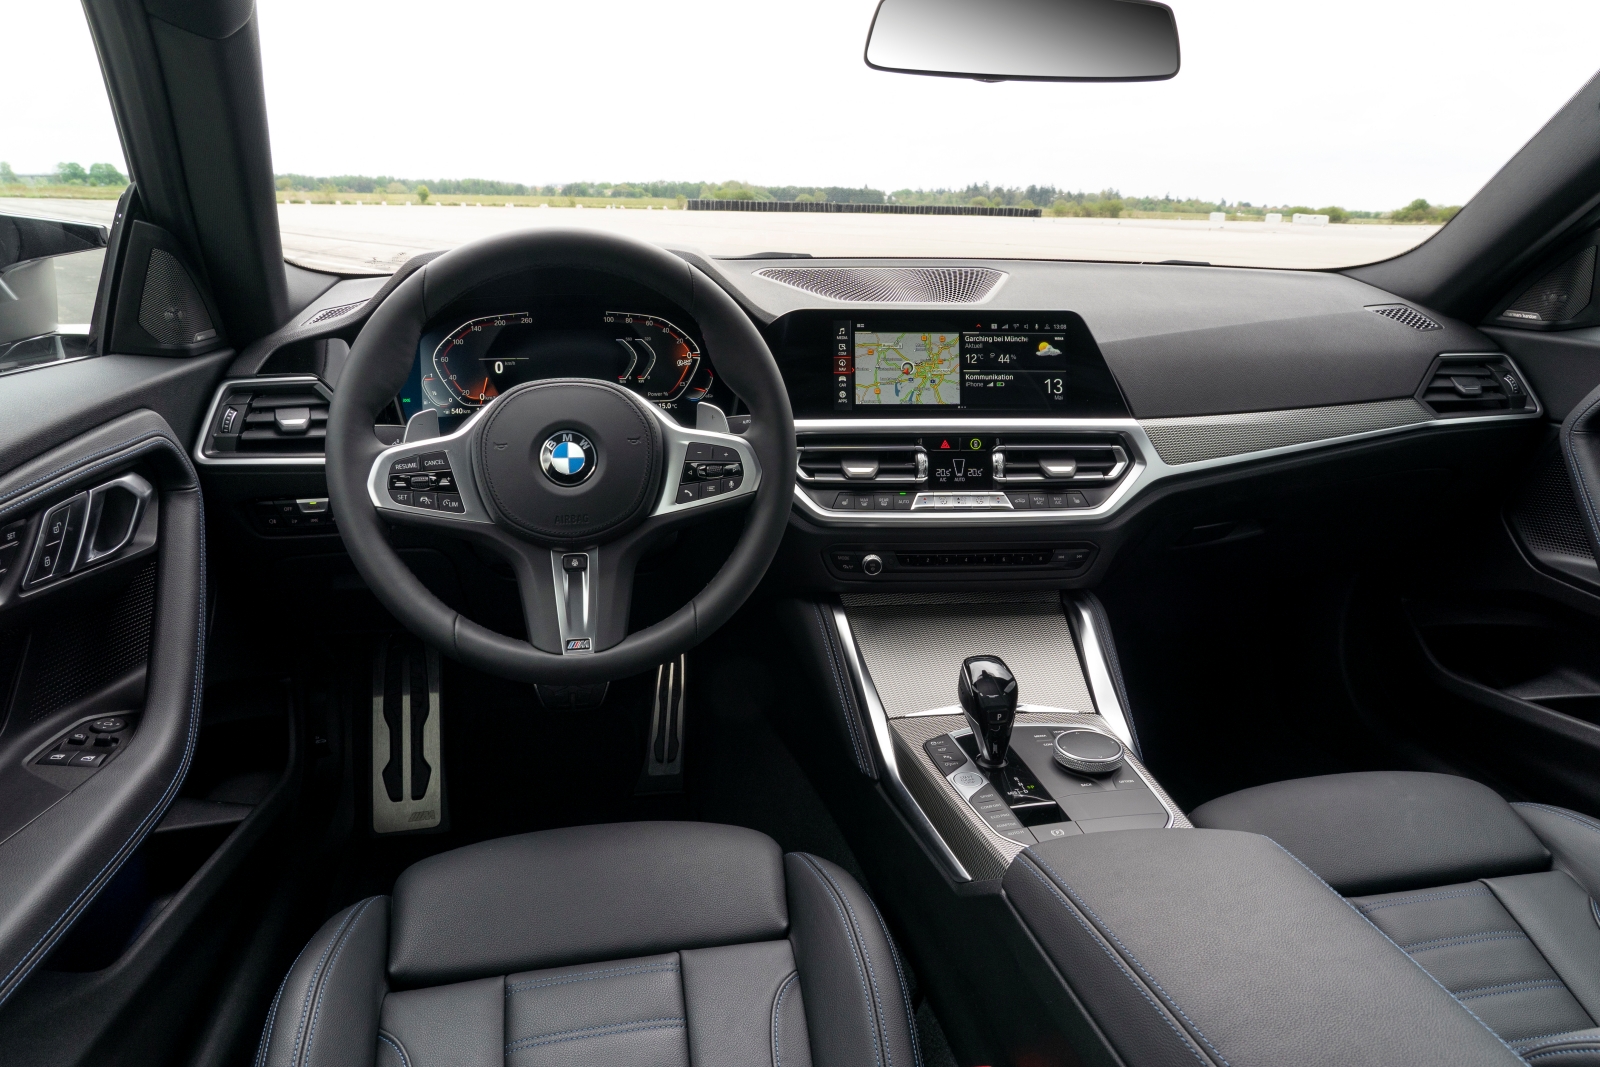 [新聞照片四] BMW堅持一貫的駕駛者導向設計，融入12.3吋虛擬數位儀錶與10.25吋中控觸控螢幕所構成的全新BMW全數位虛擬座艙